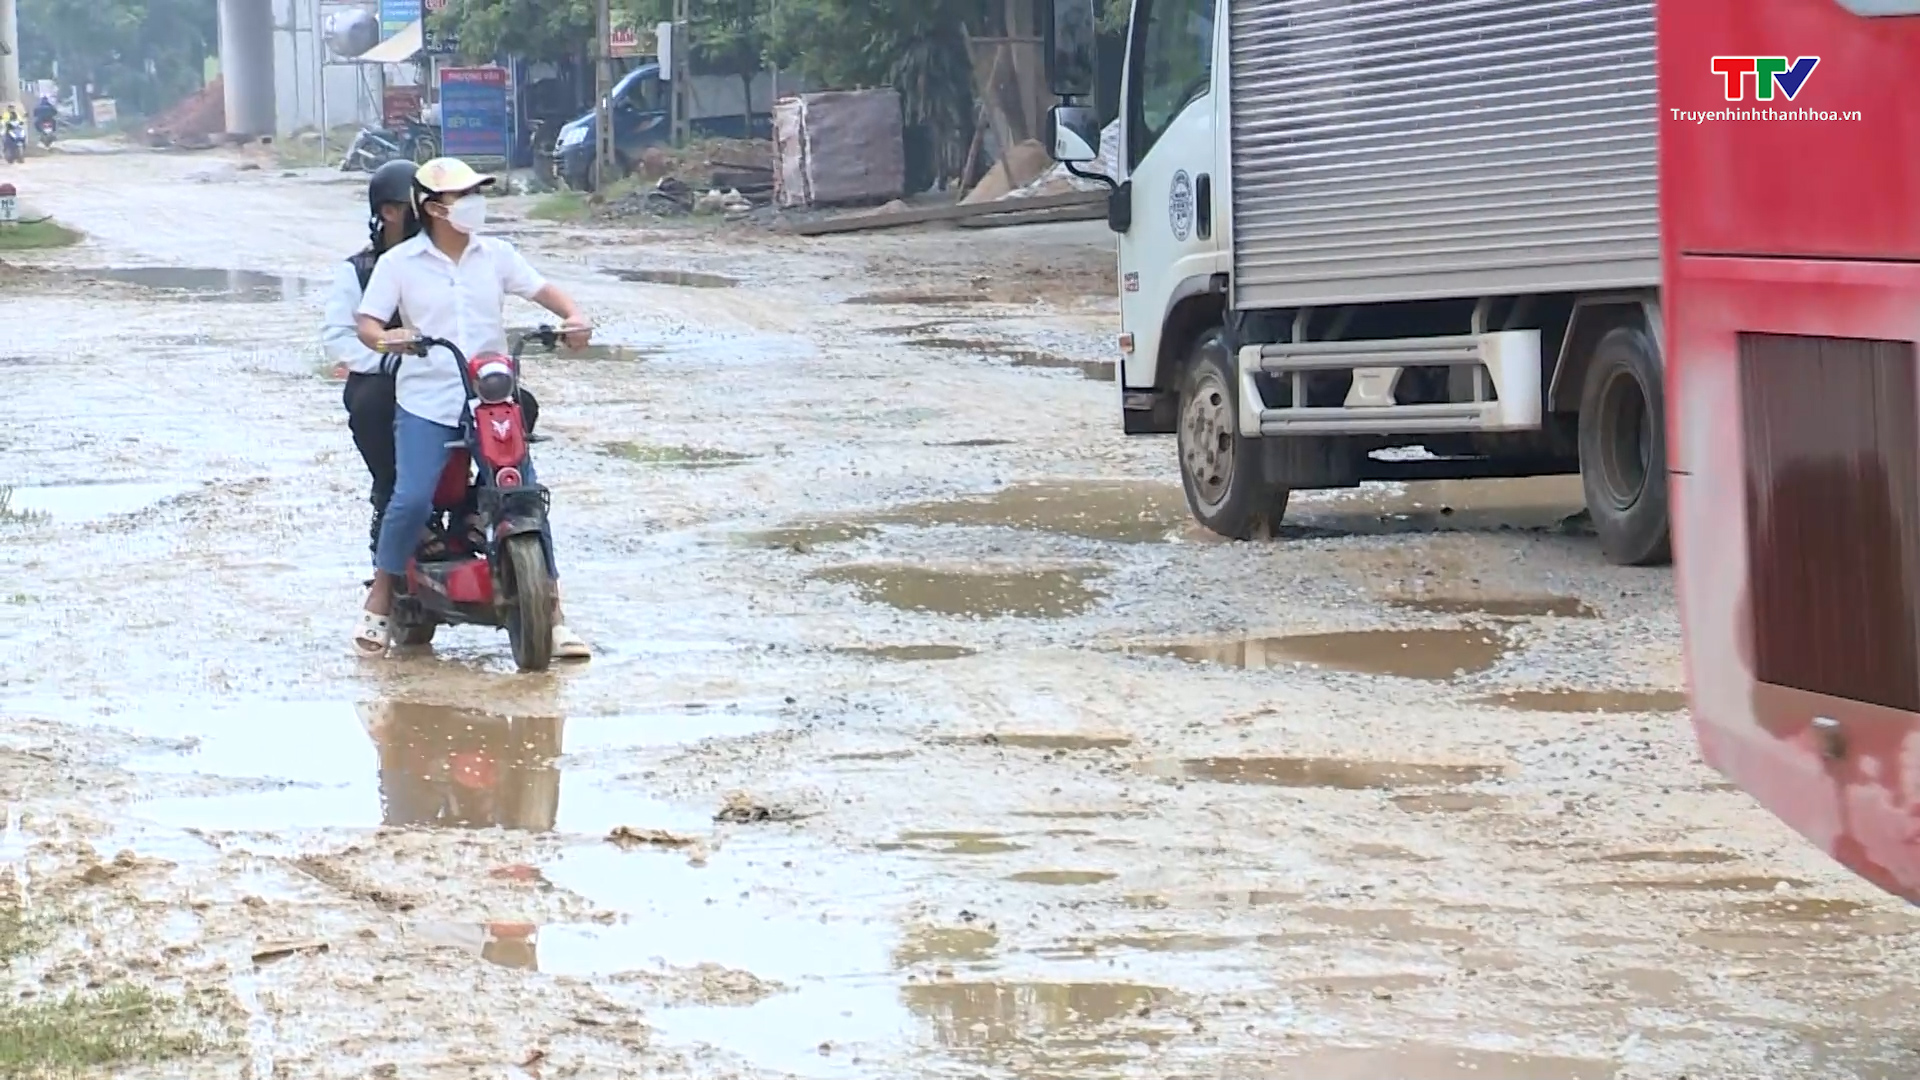 Nhiều tuyến đường trên địa bàn tỉnh Thanh Hoá xuống cấp khi thi công cao tốc Bắc - Nam  - Ảnh 2.